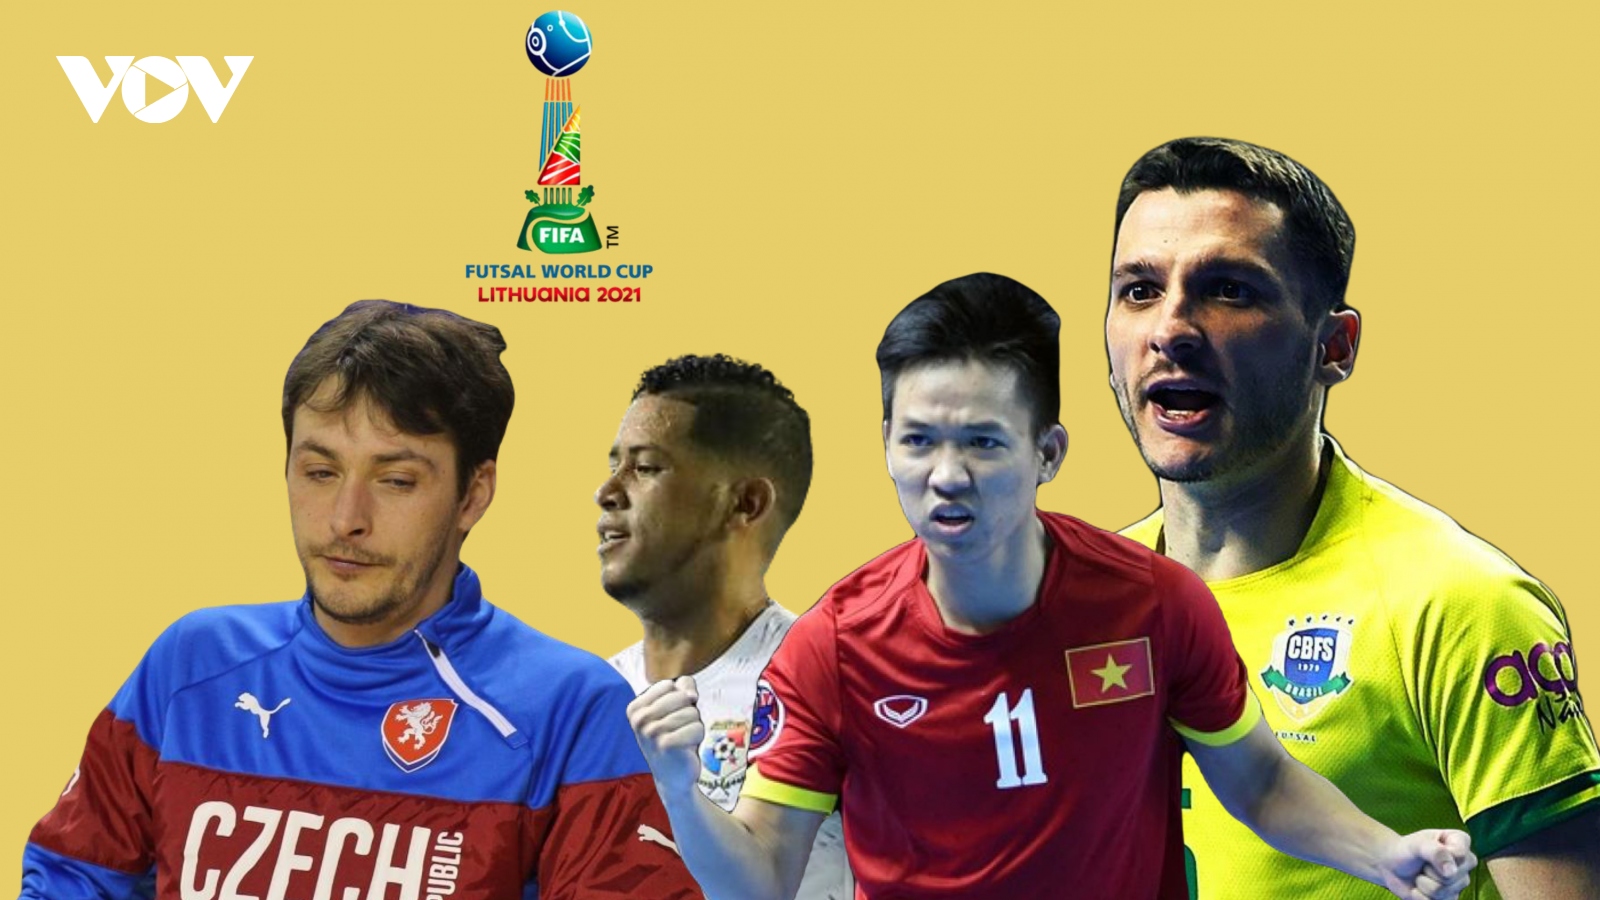 Lịch thi đấu chính thức của ĐT Futsal Việt Nam ở Futsal World Cup 2021 